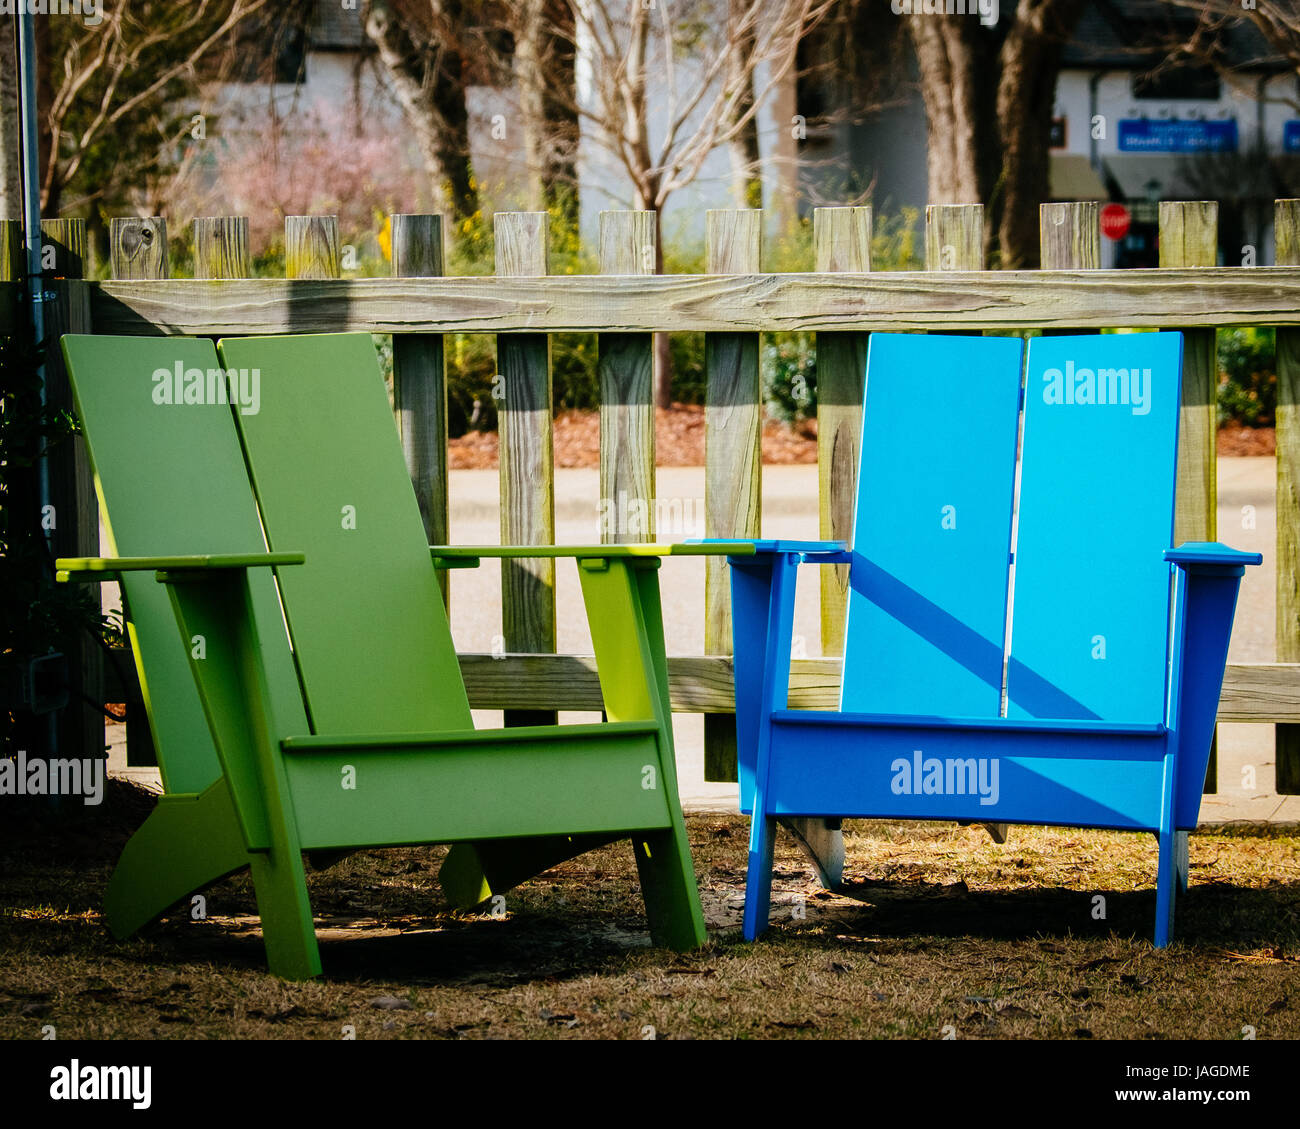 Deux couleurs, bleu et vert, des chaises Adirondack dans un patio extérieur. Banque D'Images